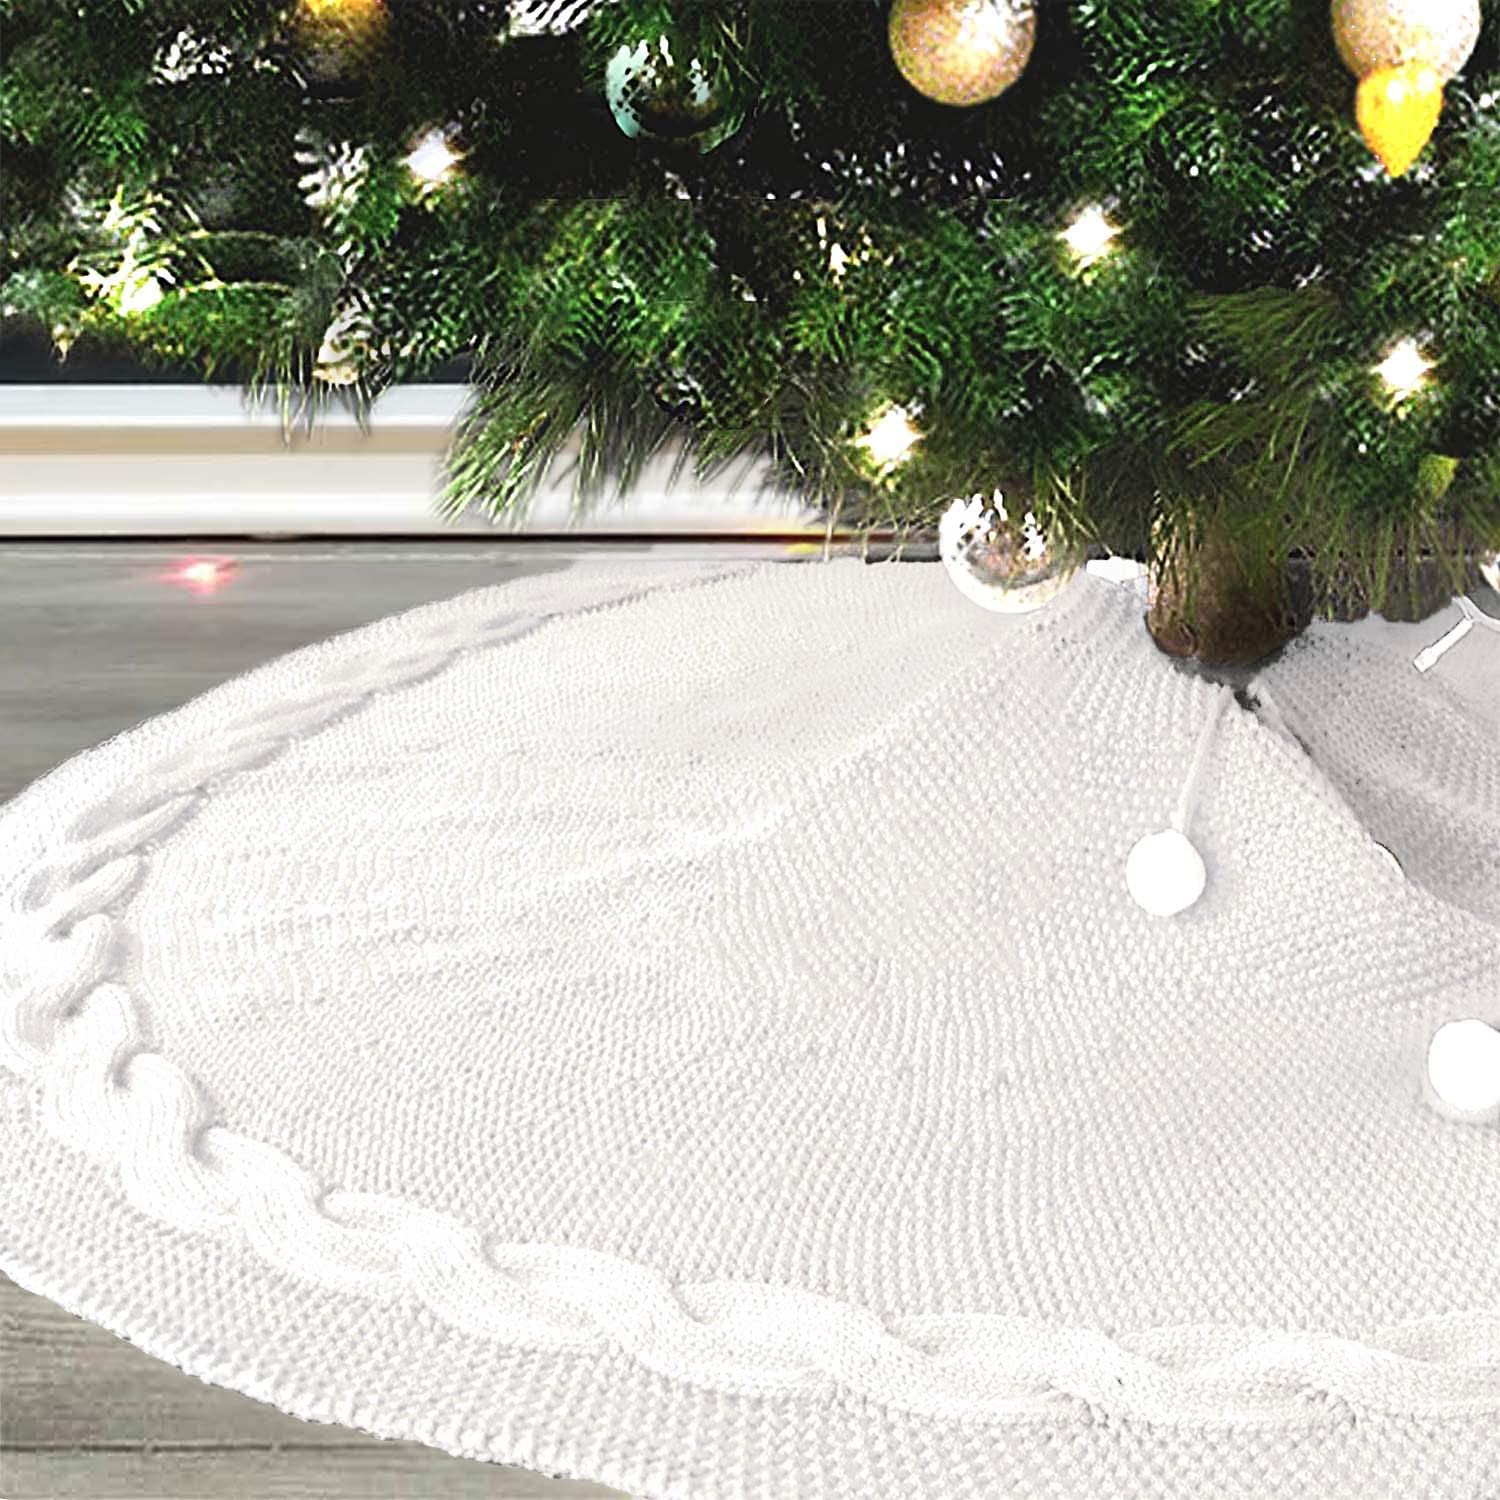 Ewolee クリスマスツリースカート 円形 120cm 北欧柄 ニット製 ツリースカート 下敷物 クリスマスツリー飾り 白い